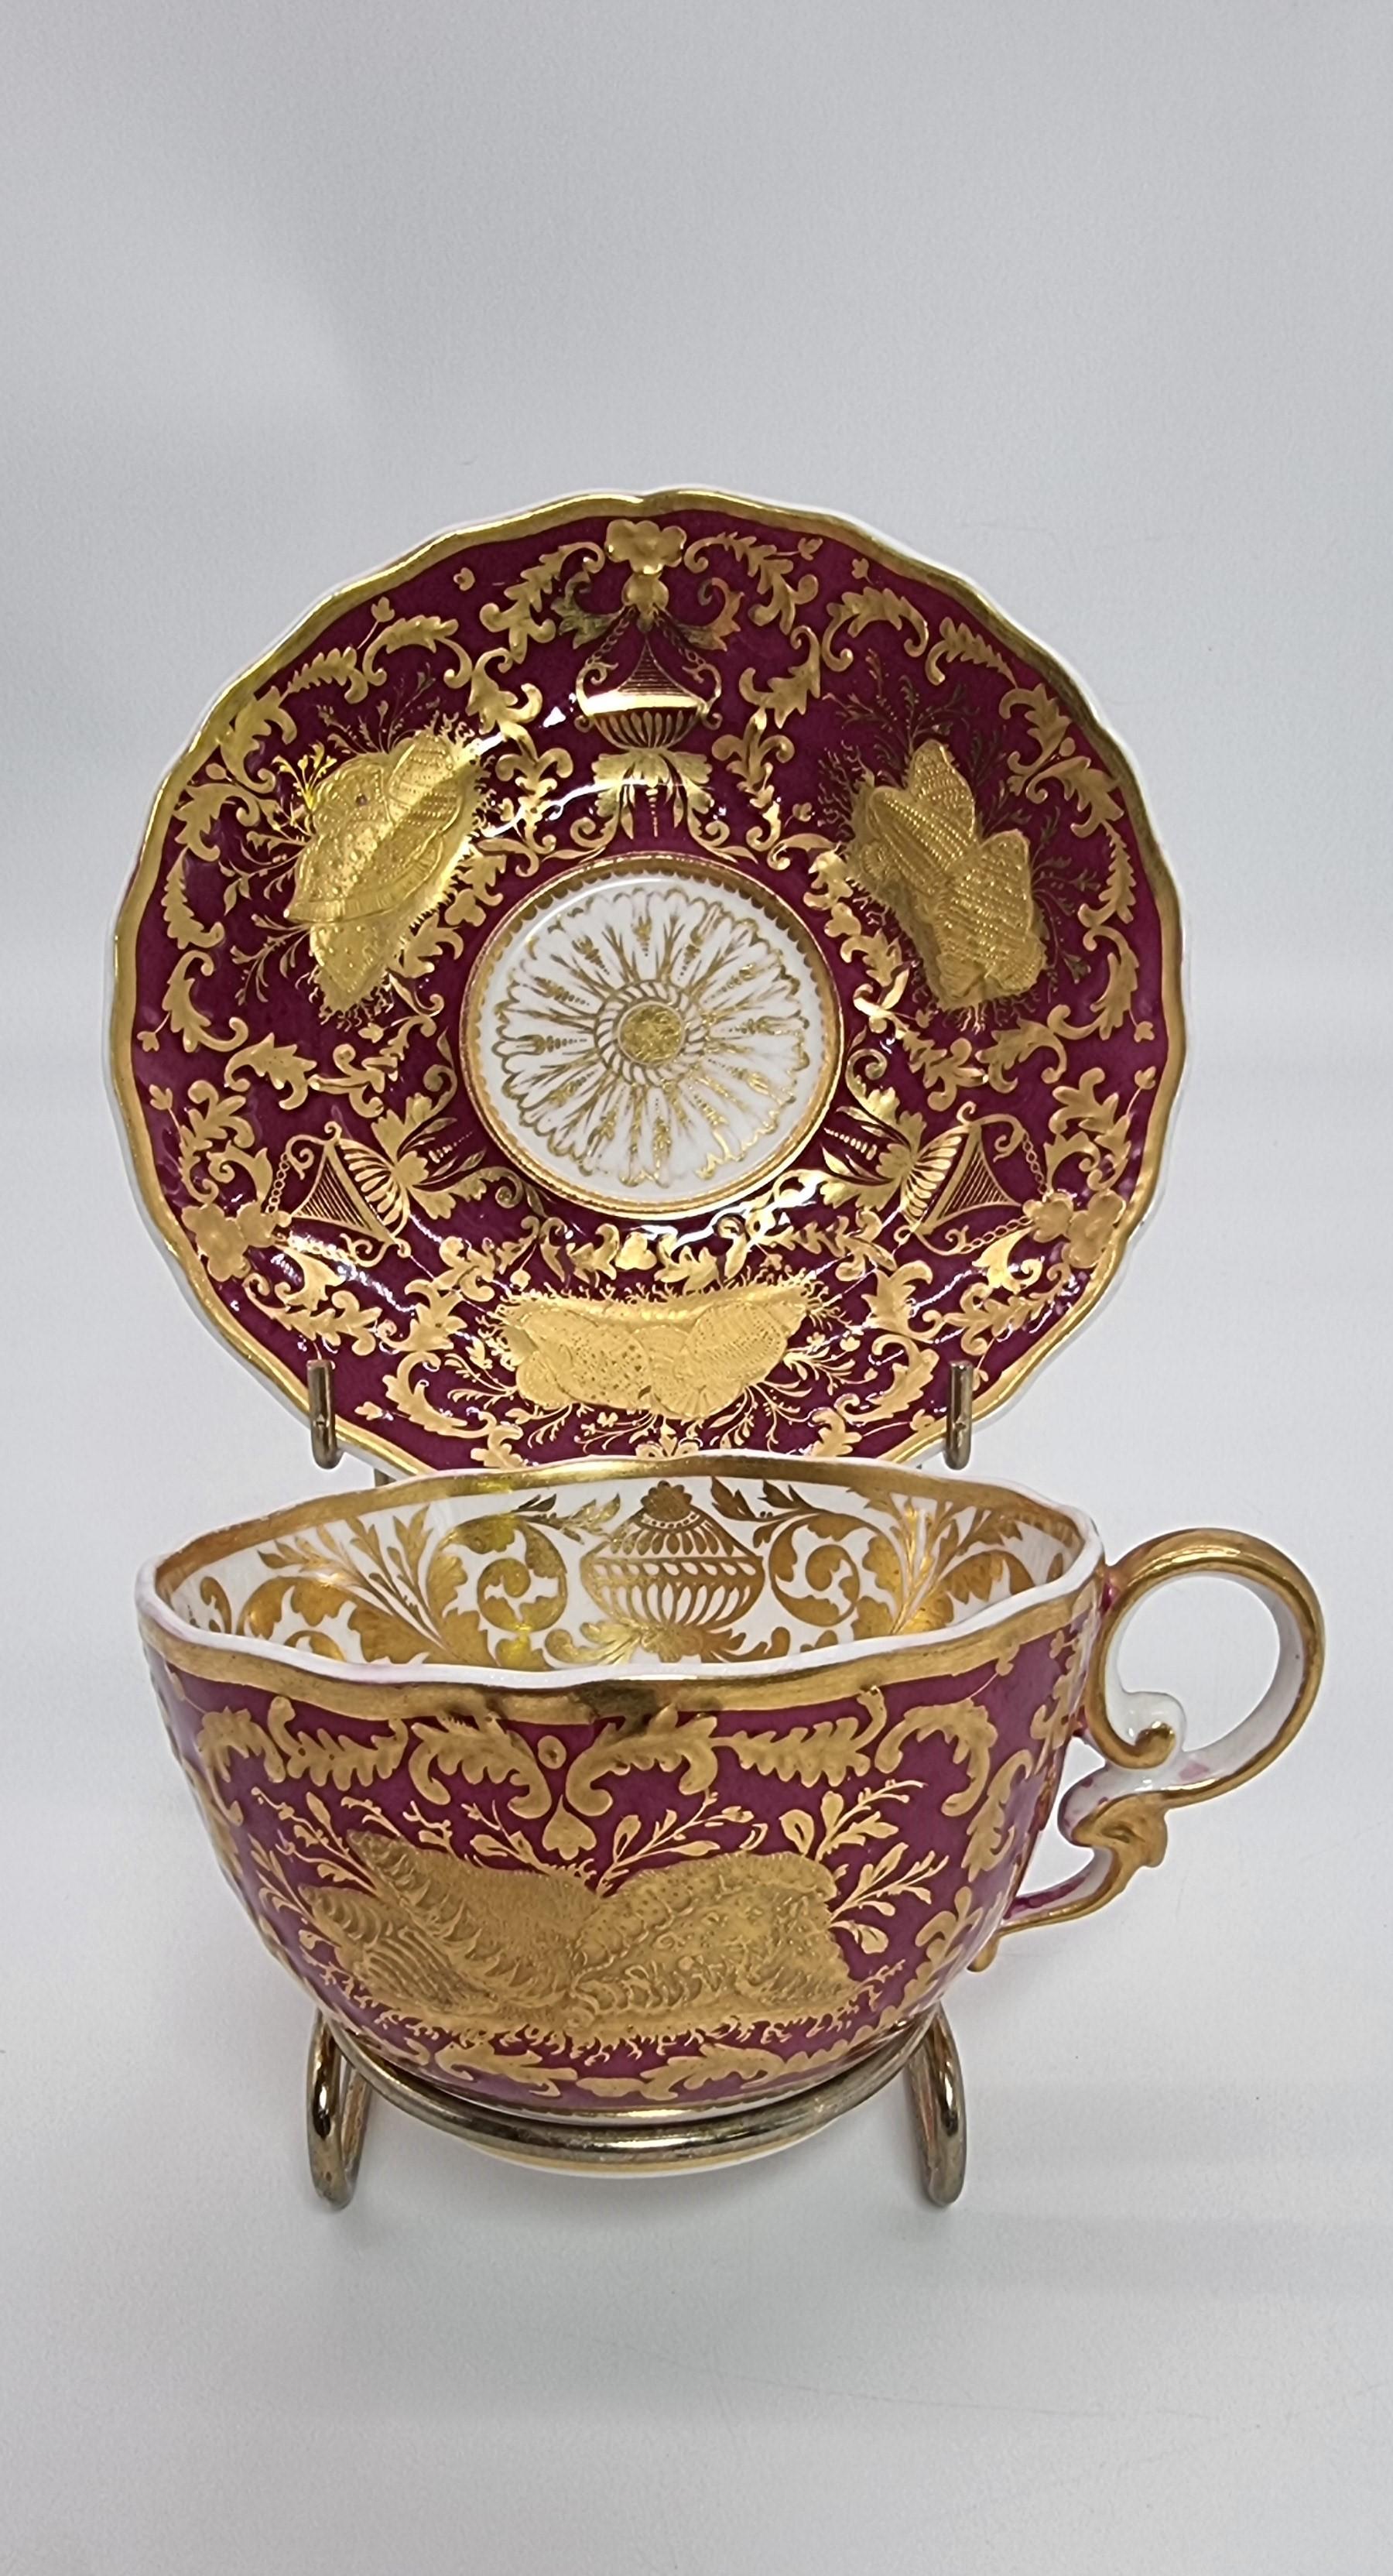 Eine exquisite und seltene frühe 19t C Spode Schrank Tasse und Untertasse.
Diese schöne und reich verzierte Spode Schranktasse mit Untertasse wurde in dieser hochwertigen englischen Porzellanfabrik um 1830 hergestellt.  Es hat eine tiefe Pflaume